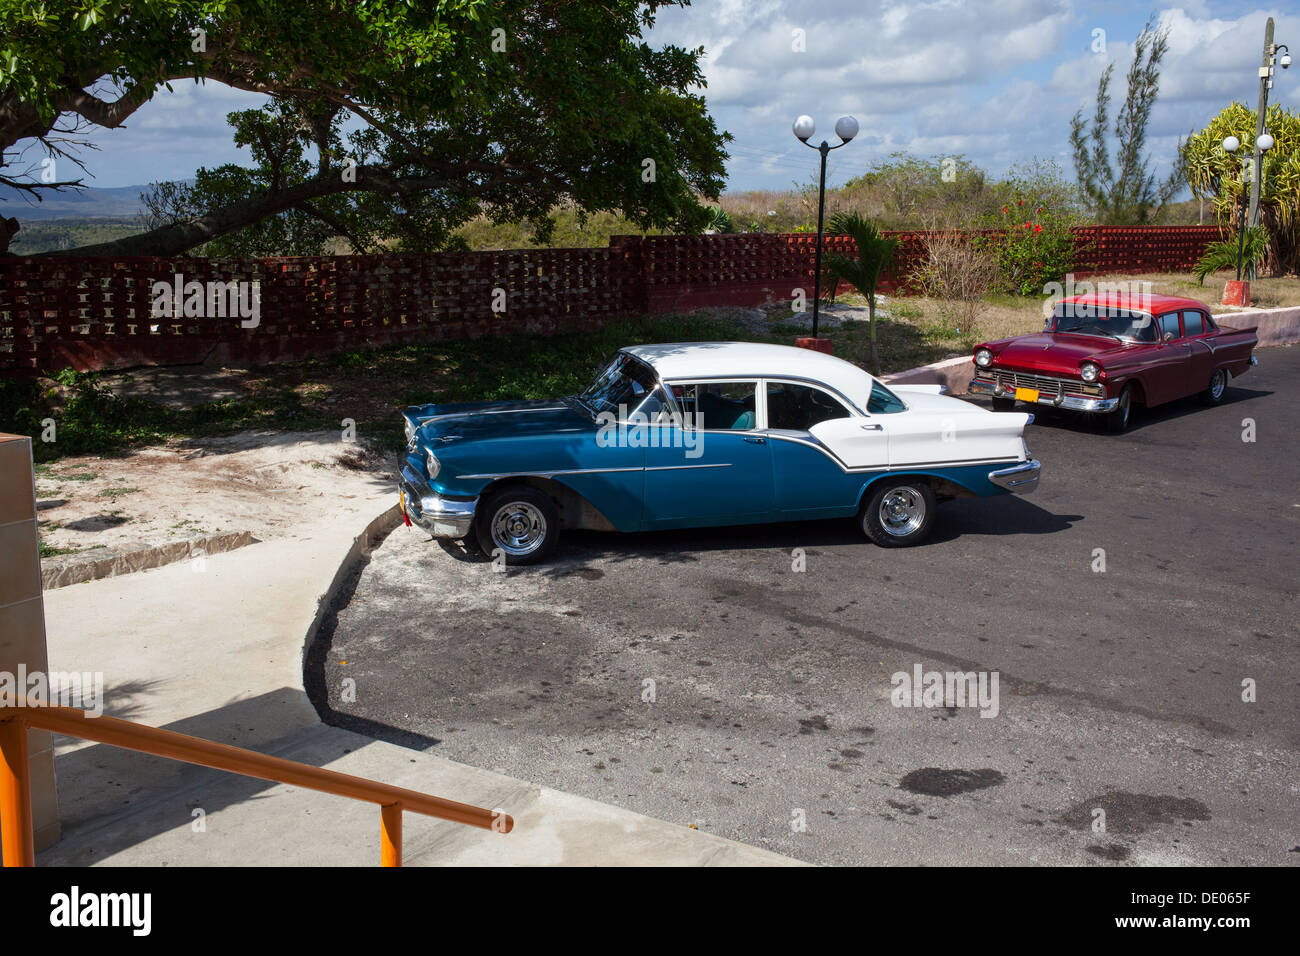 Deux voitures années 50 à Cuba, Varadero. Voiture rétro puissant en bleu et blanc, couleurs, rouge voiture près de. Banque D'Images